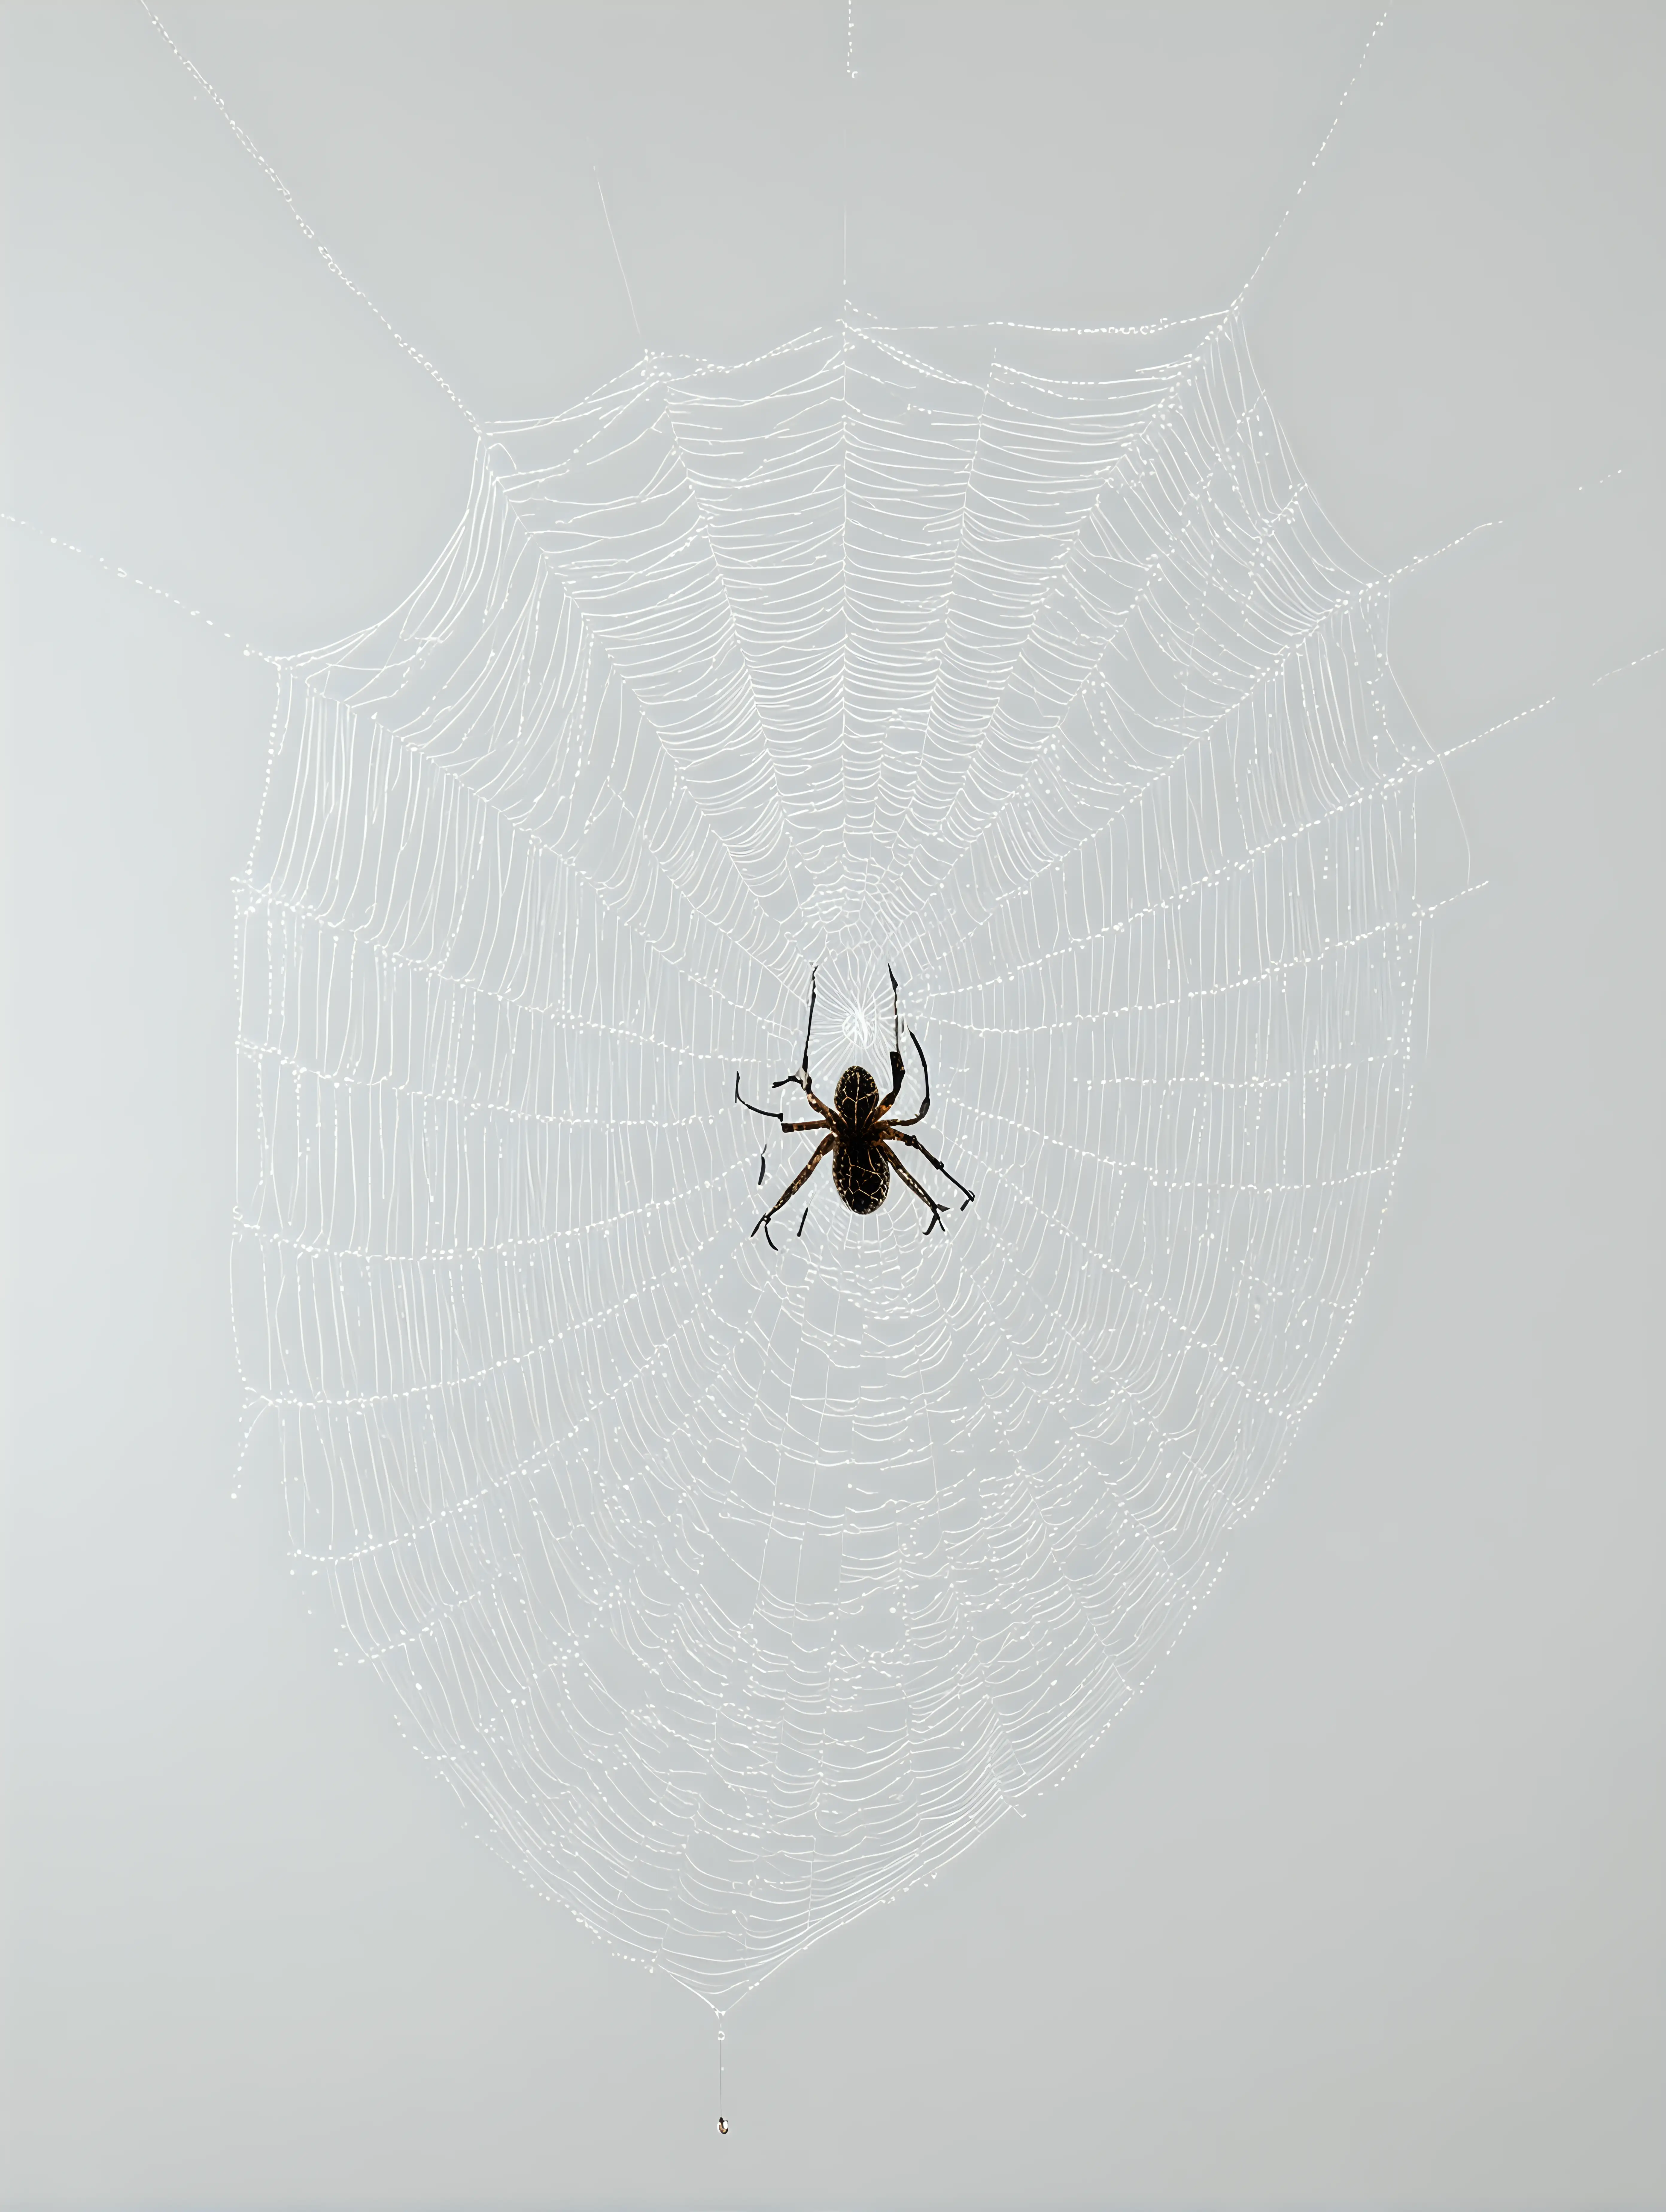 spiderweb against a white background no spider